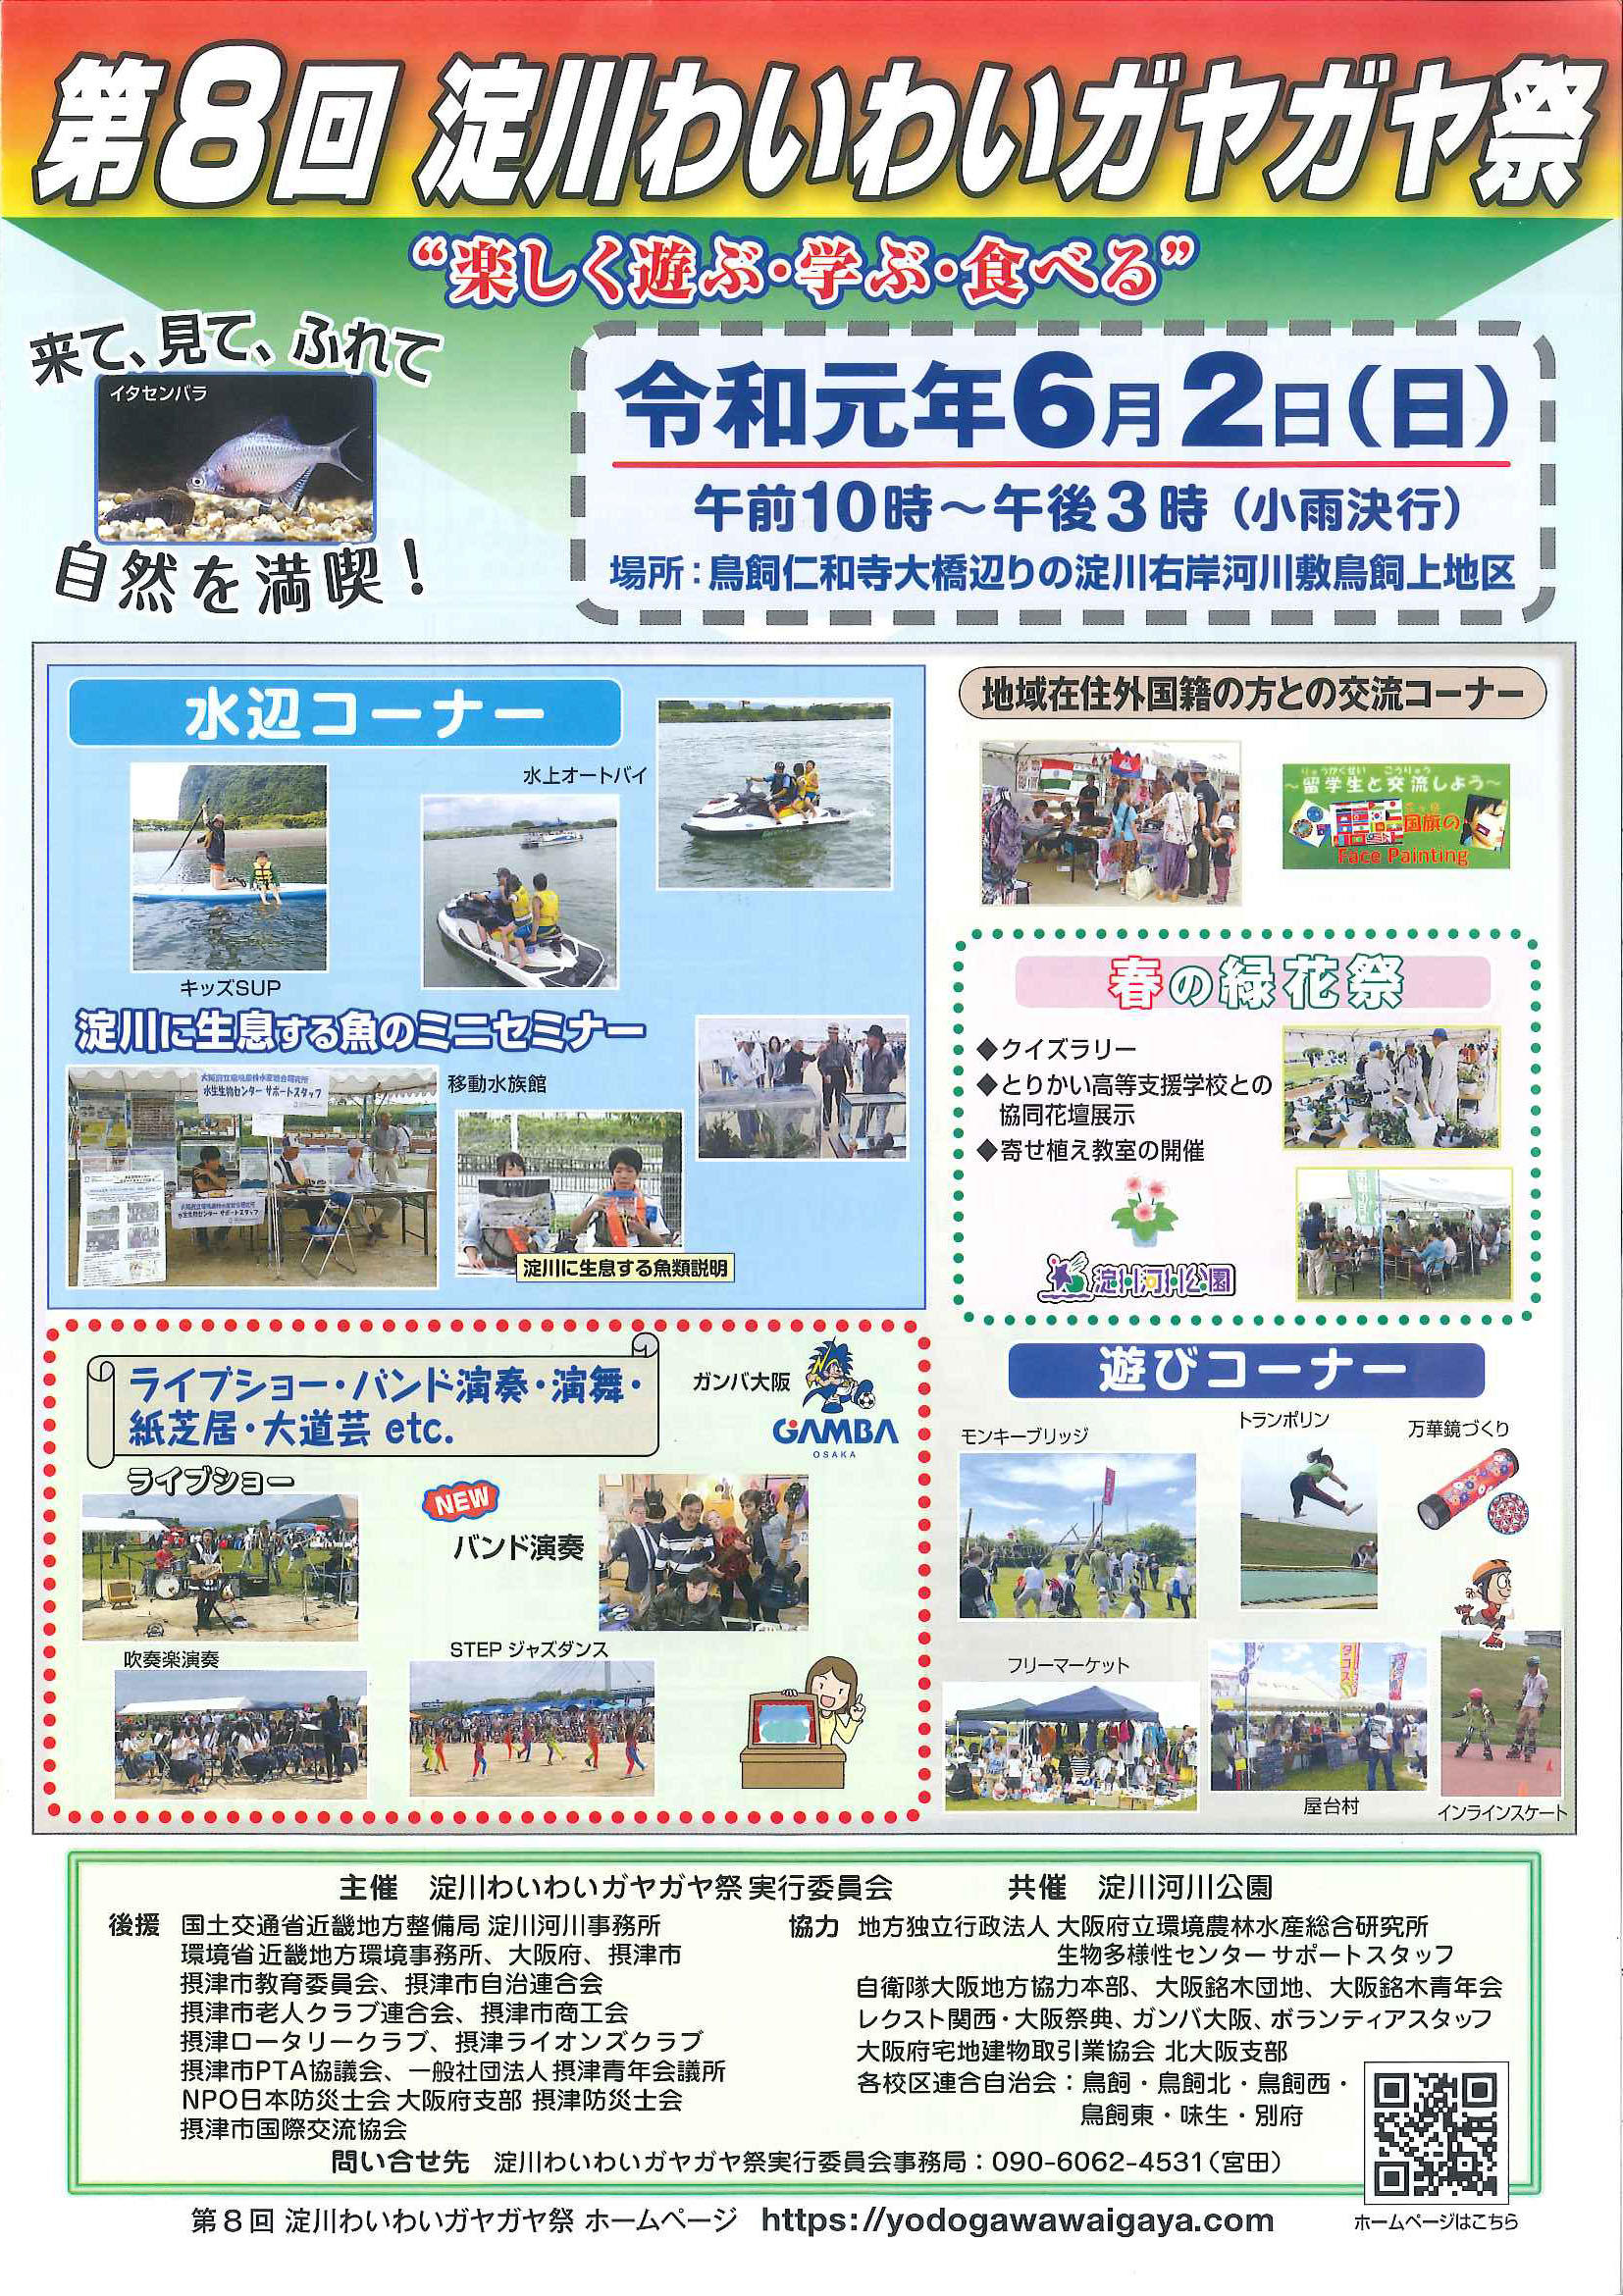 大阪国際大学の留学生が6月2日開催のイベント「第8回淀川わいわいガヤガヤ祭」に参加 -- SNSでの自国に向けてアピール